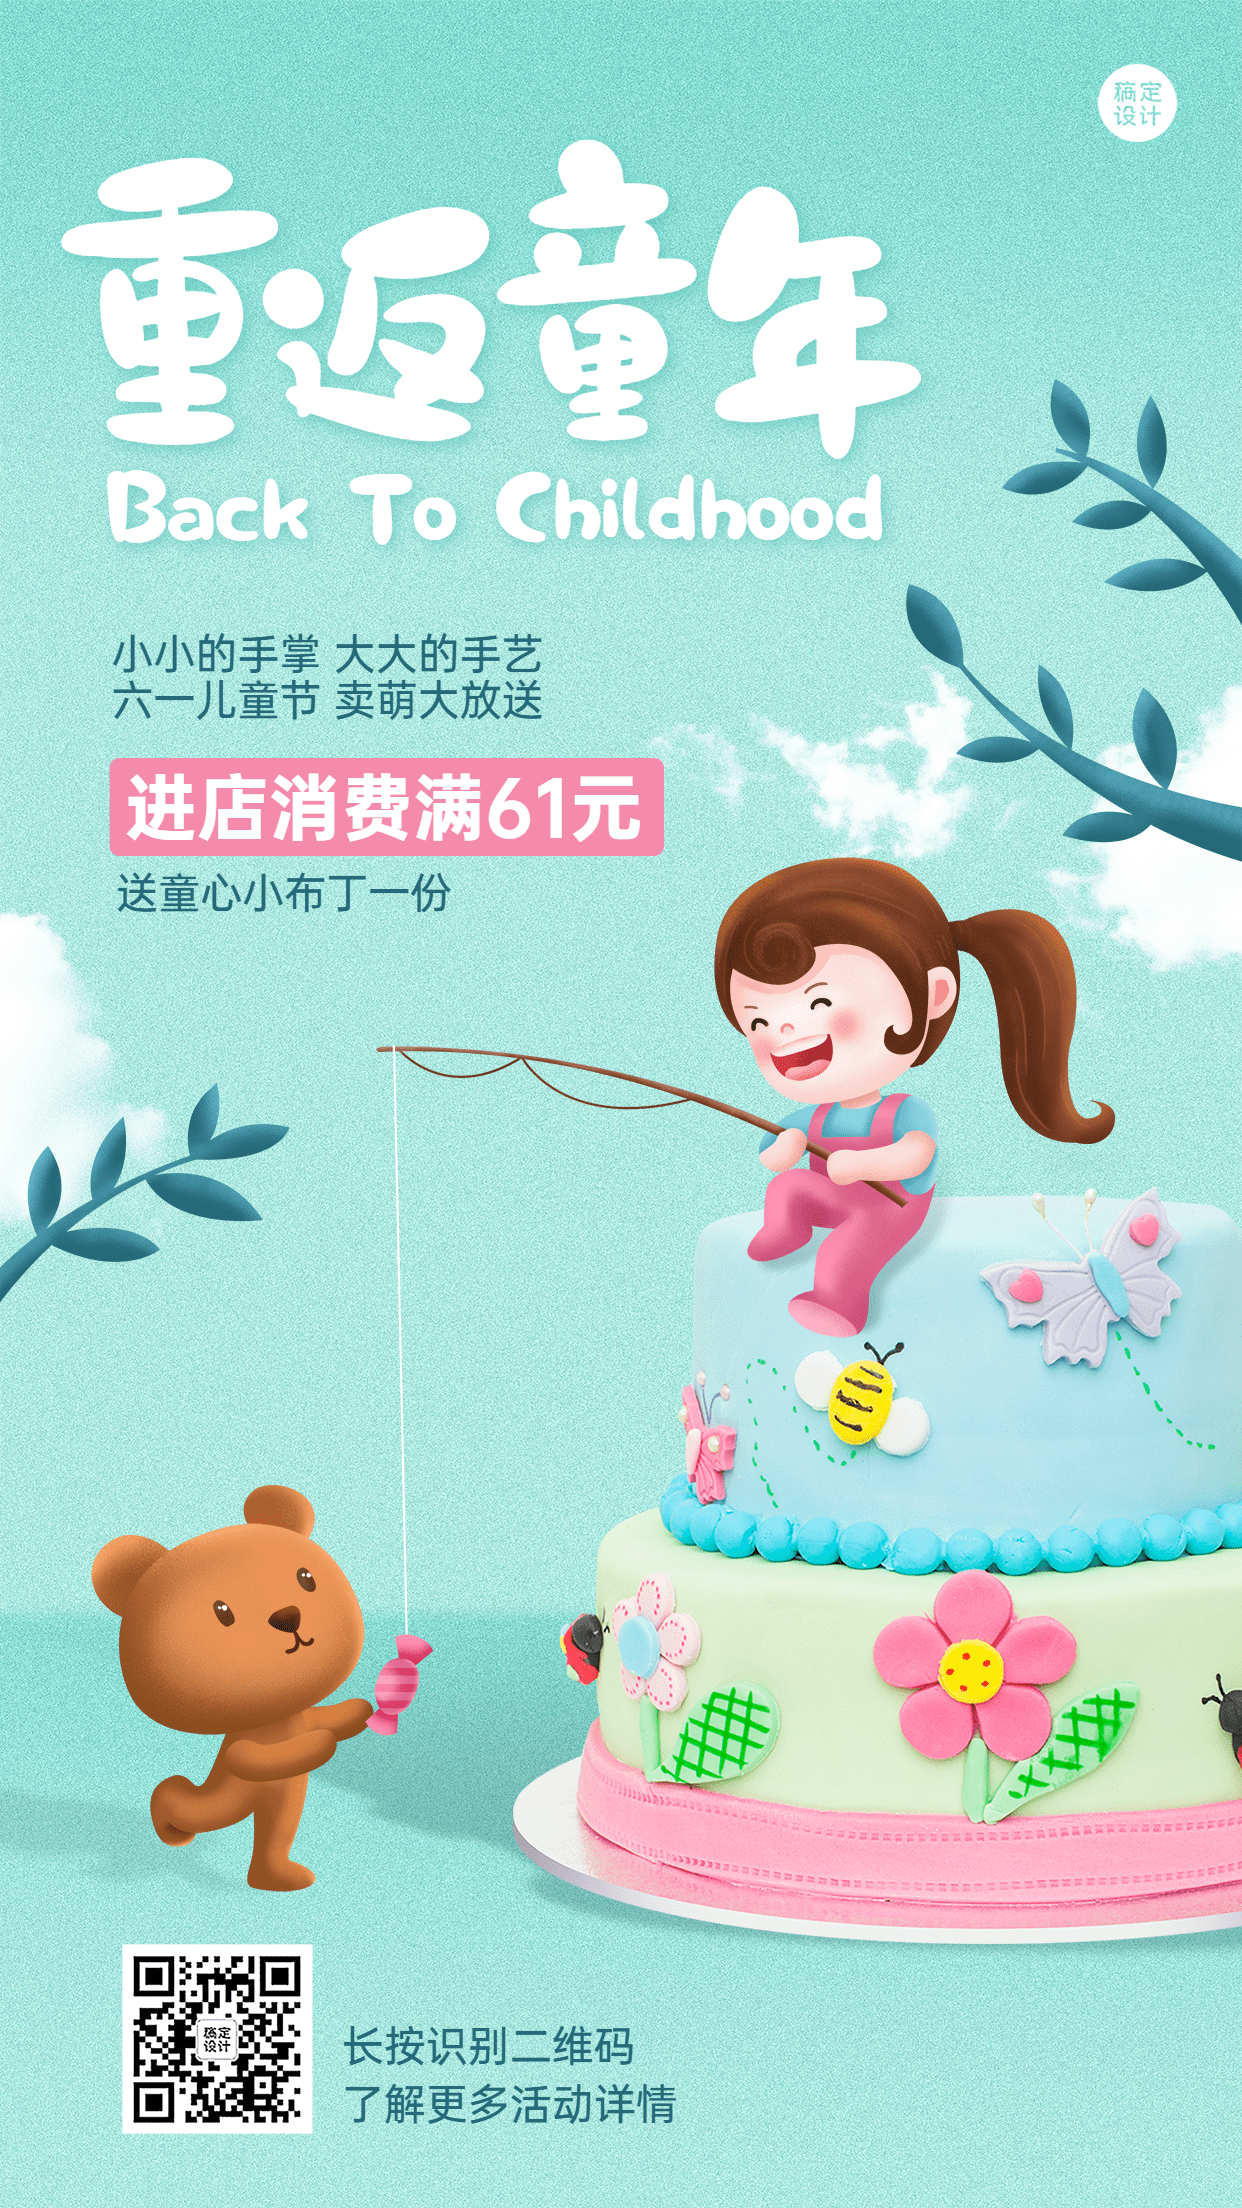 儿童节餐饮蛋糕烘焙活动营销手机海报预览效果